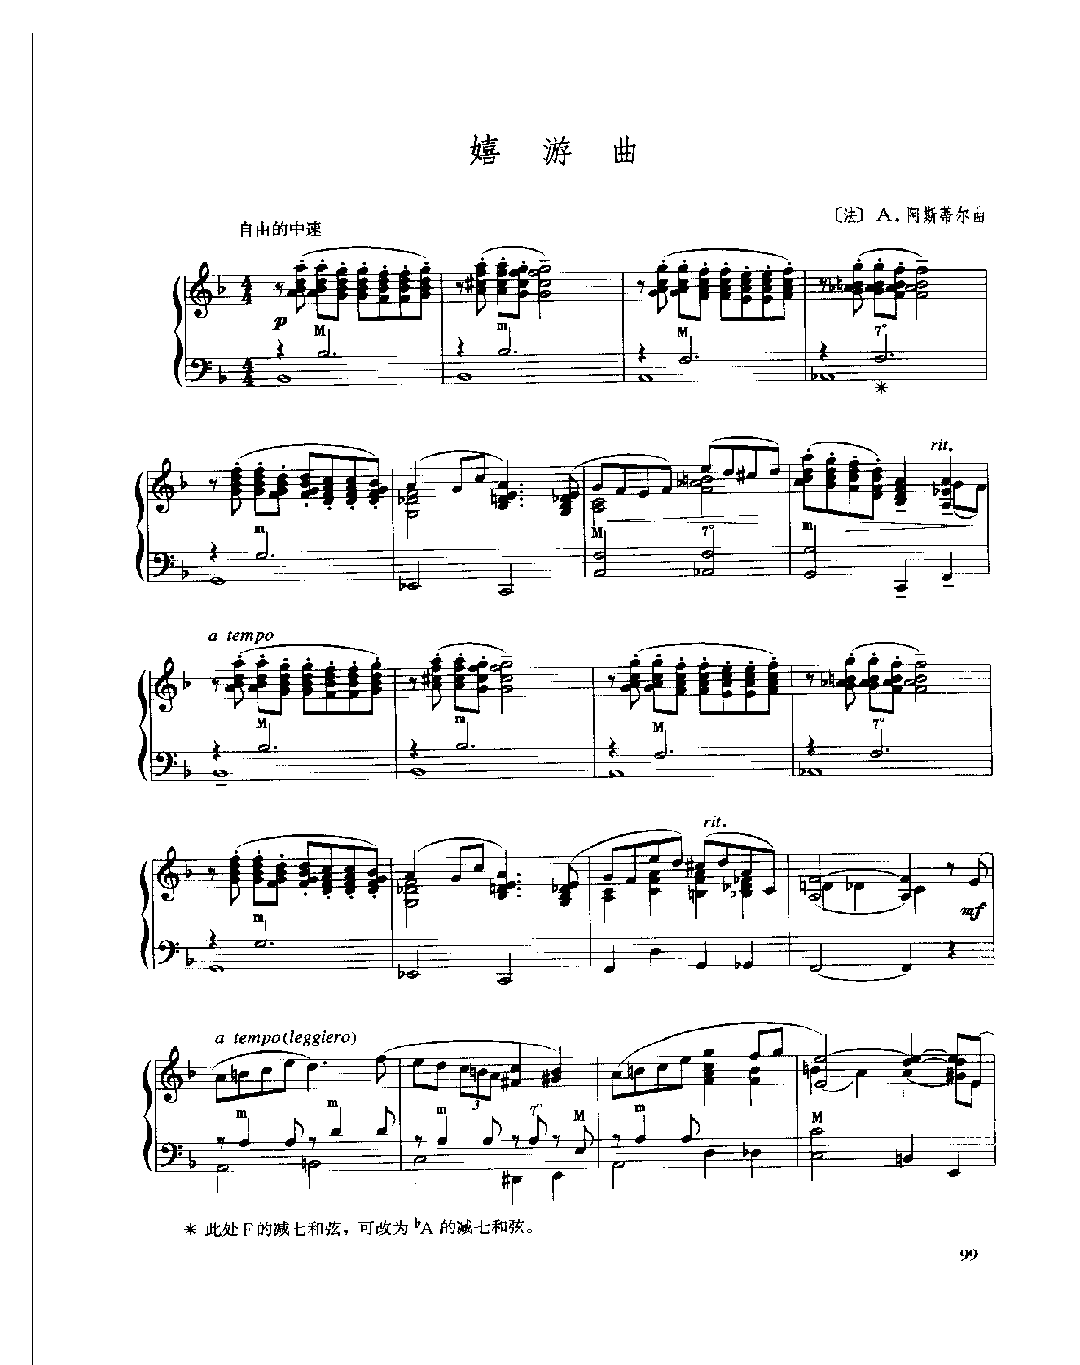 现代手风琴流行乐曲《嬉游曲》[法]A.阿斯蒂尔曲